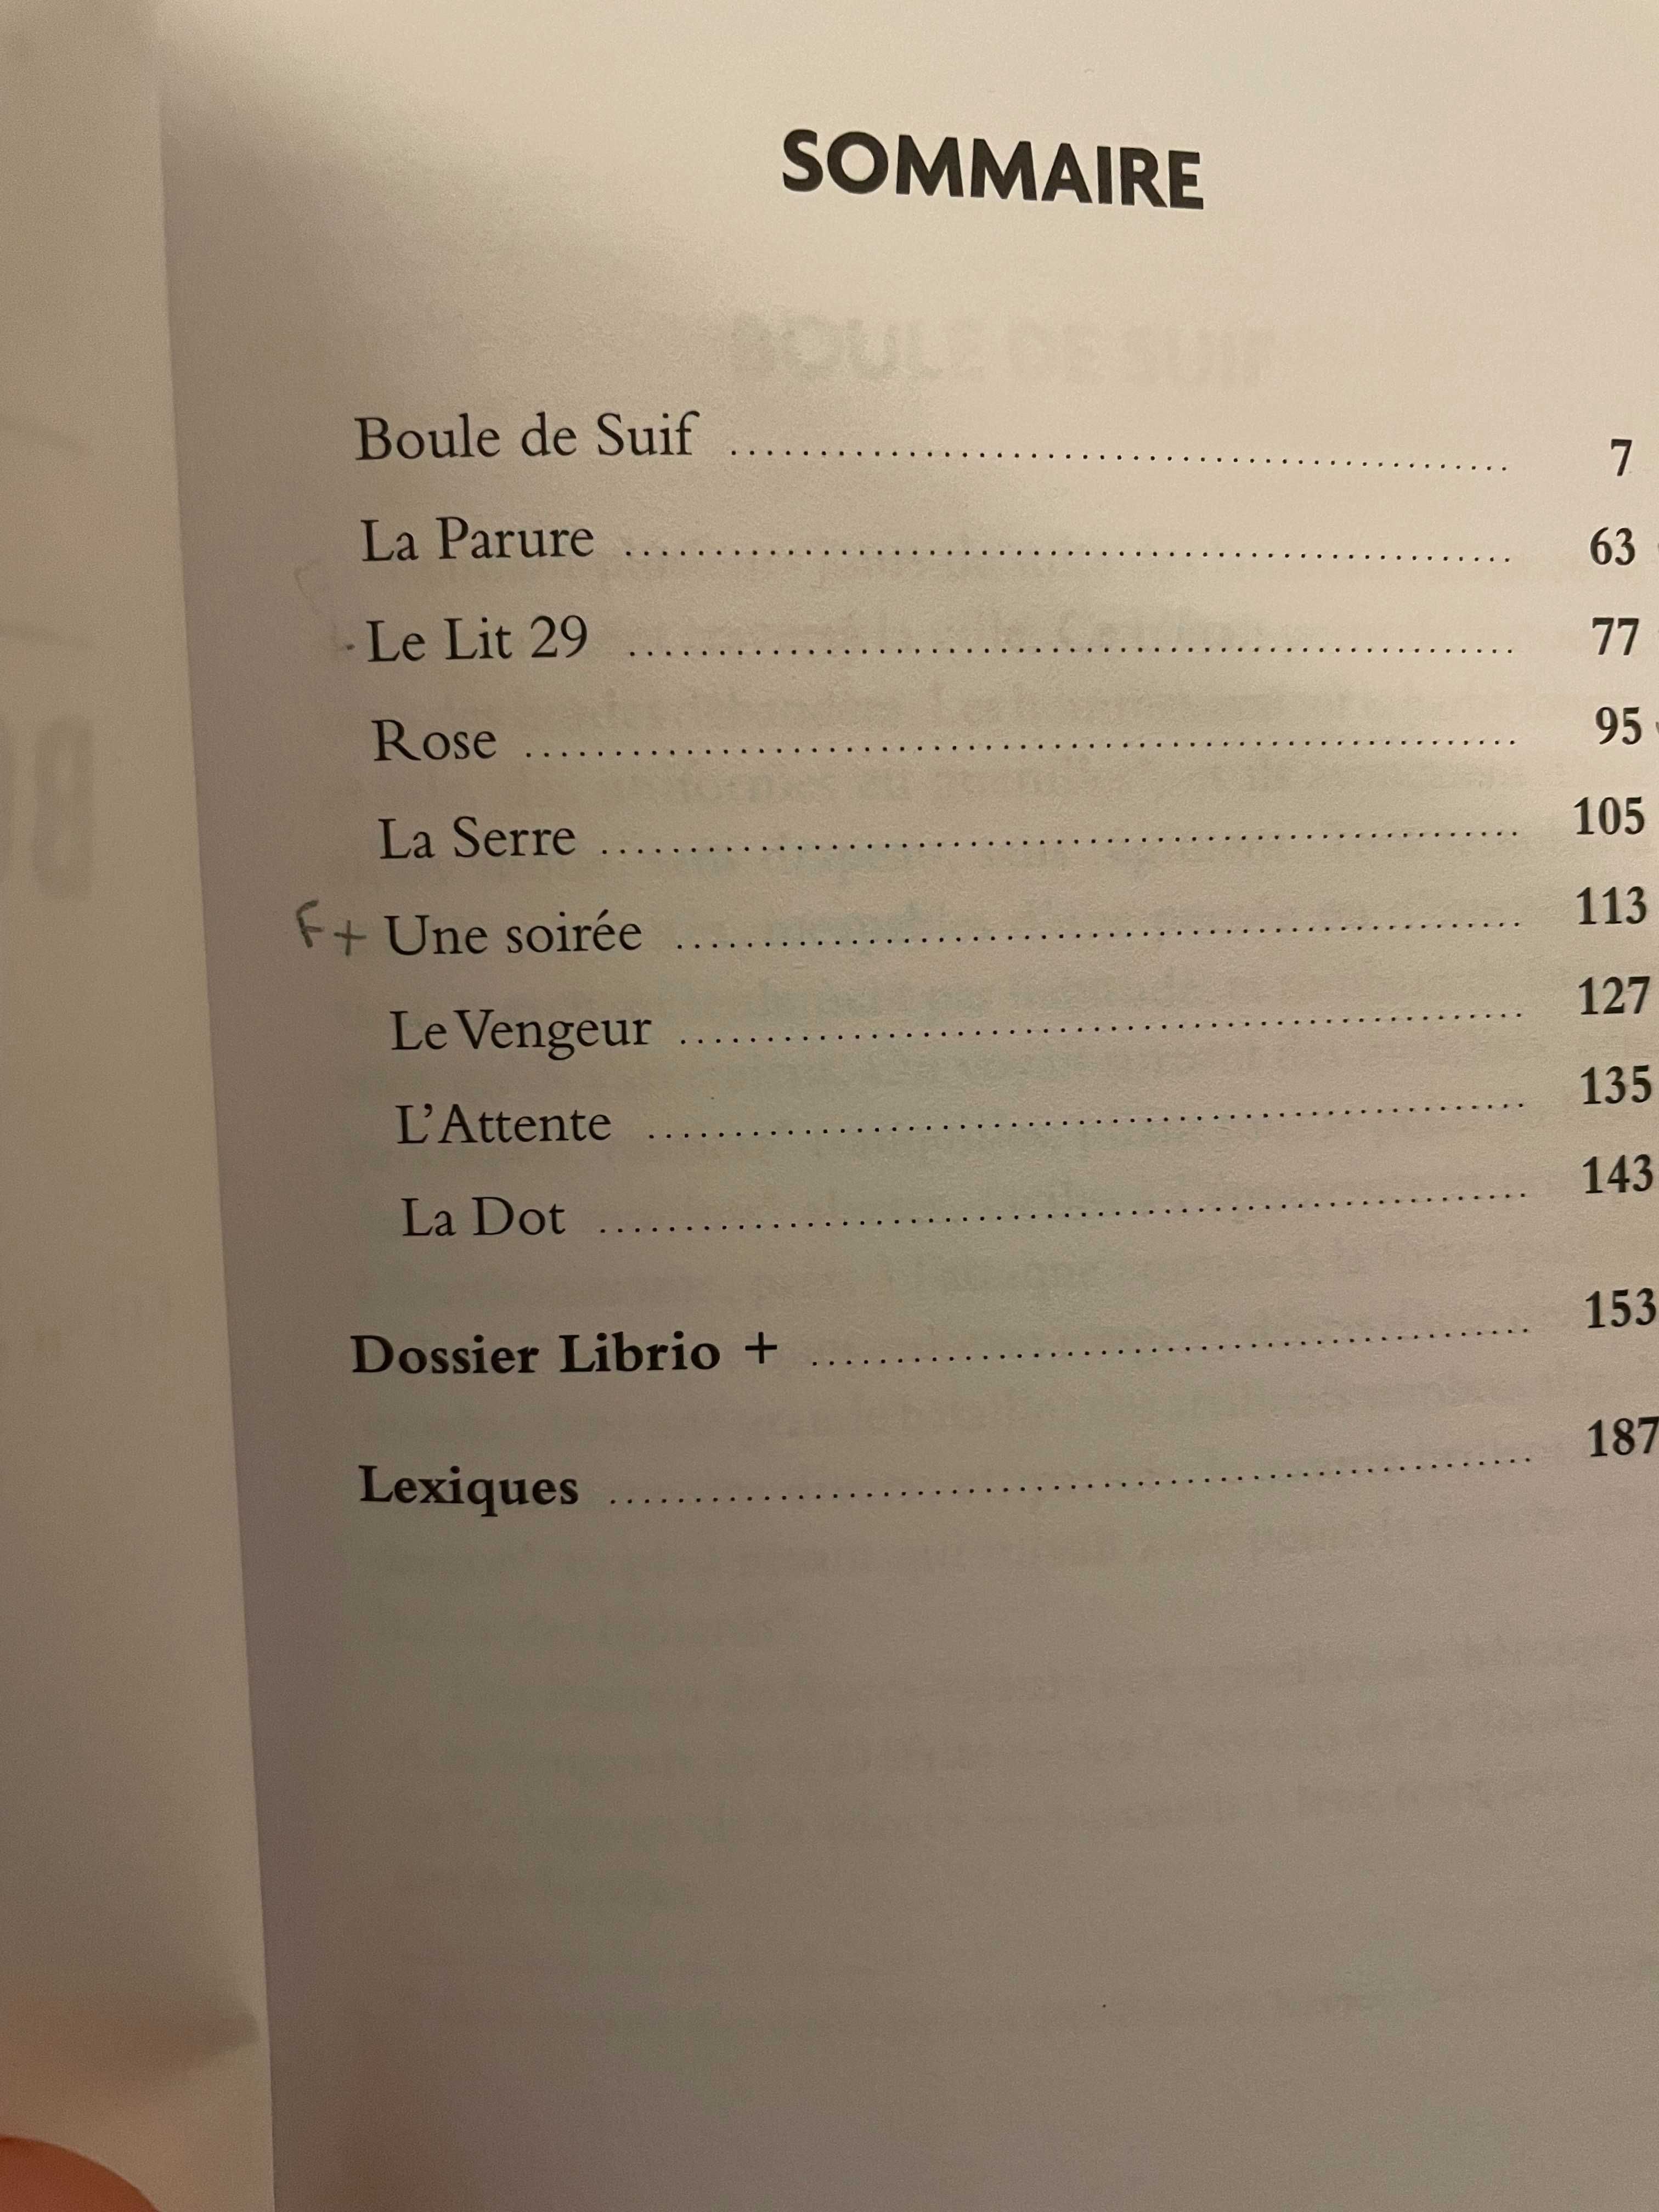 Boule de suif (Лоената топка и други разкази на Мопасан, на фр. език)